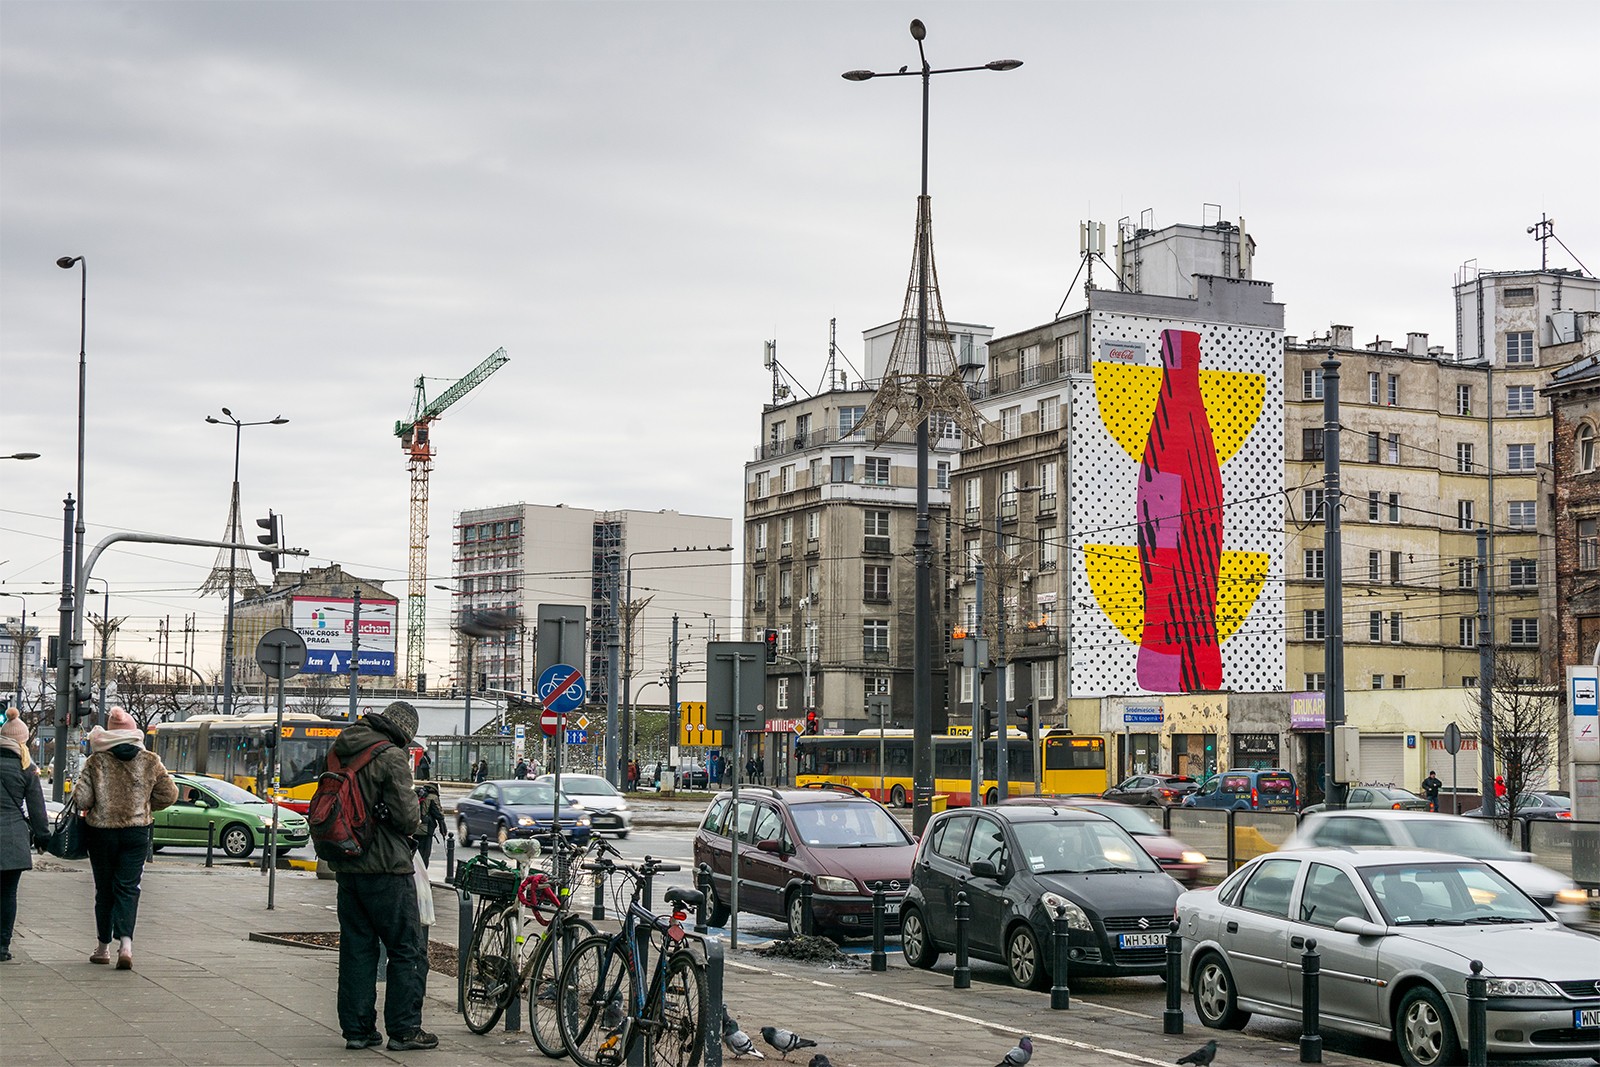 Mural of Coca Cola designed by Piotr Mlodozeniec in Warsaw | The icon returns | Portfolio